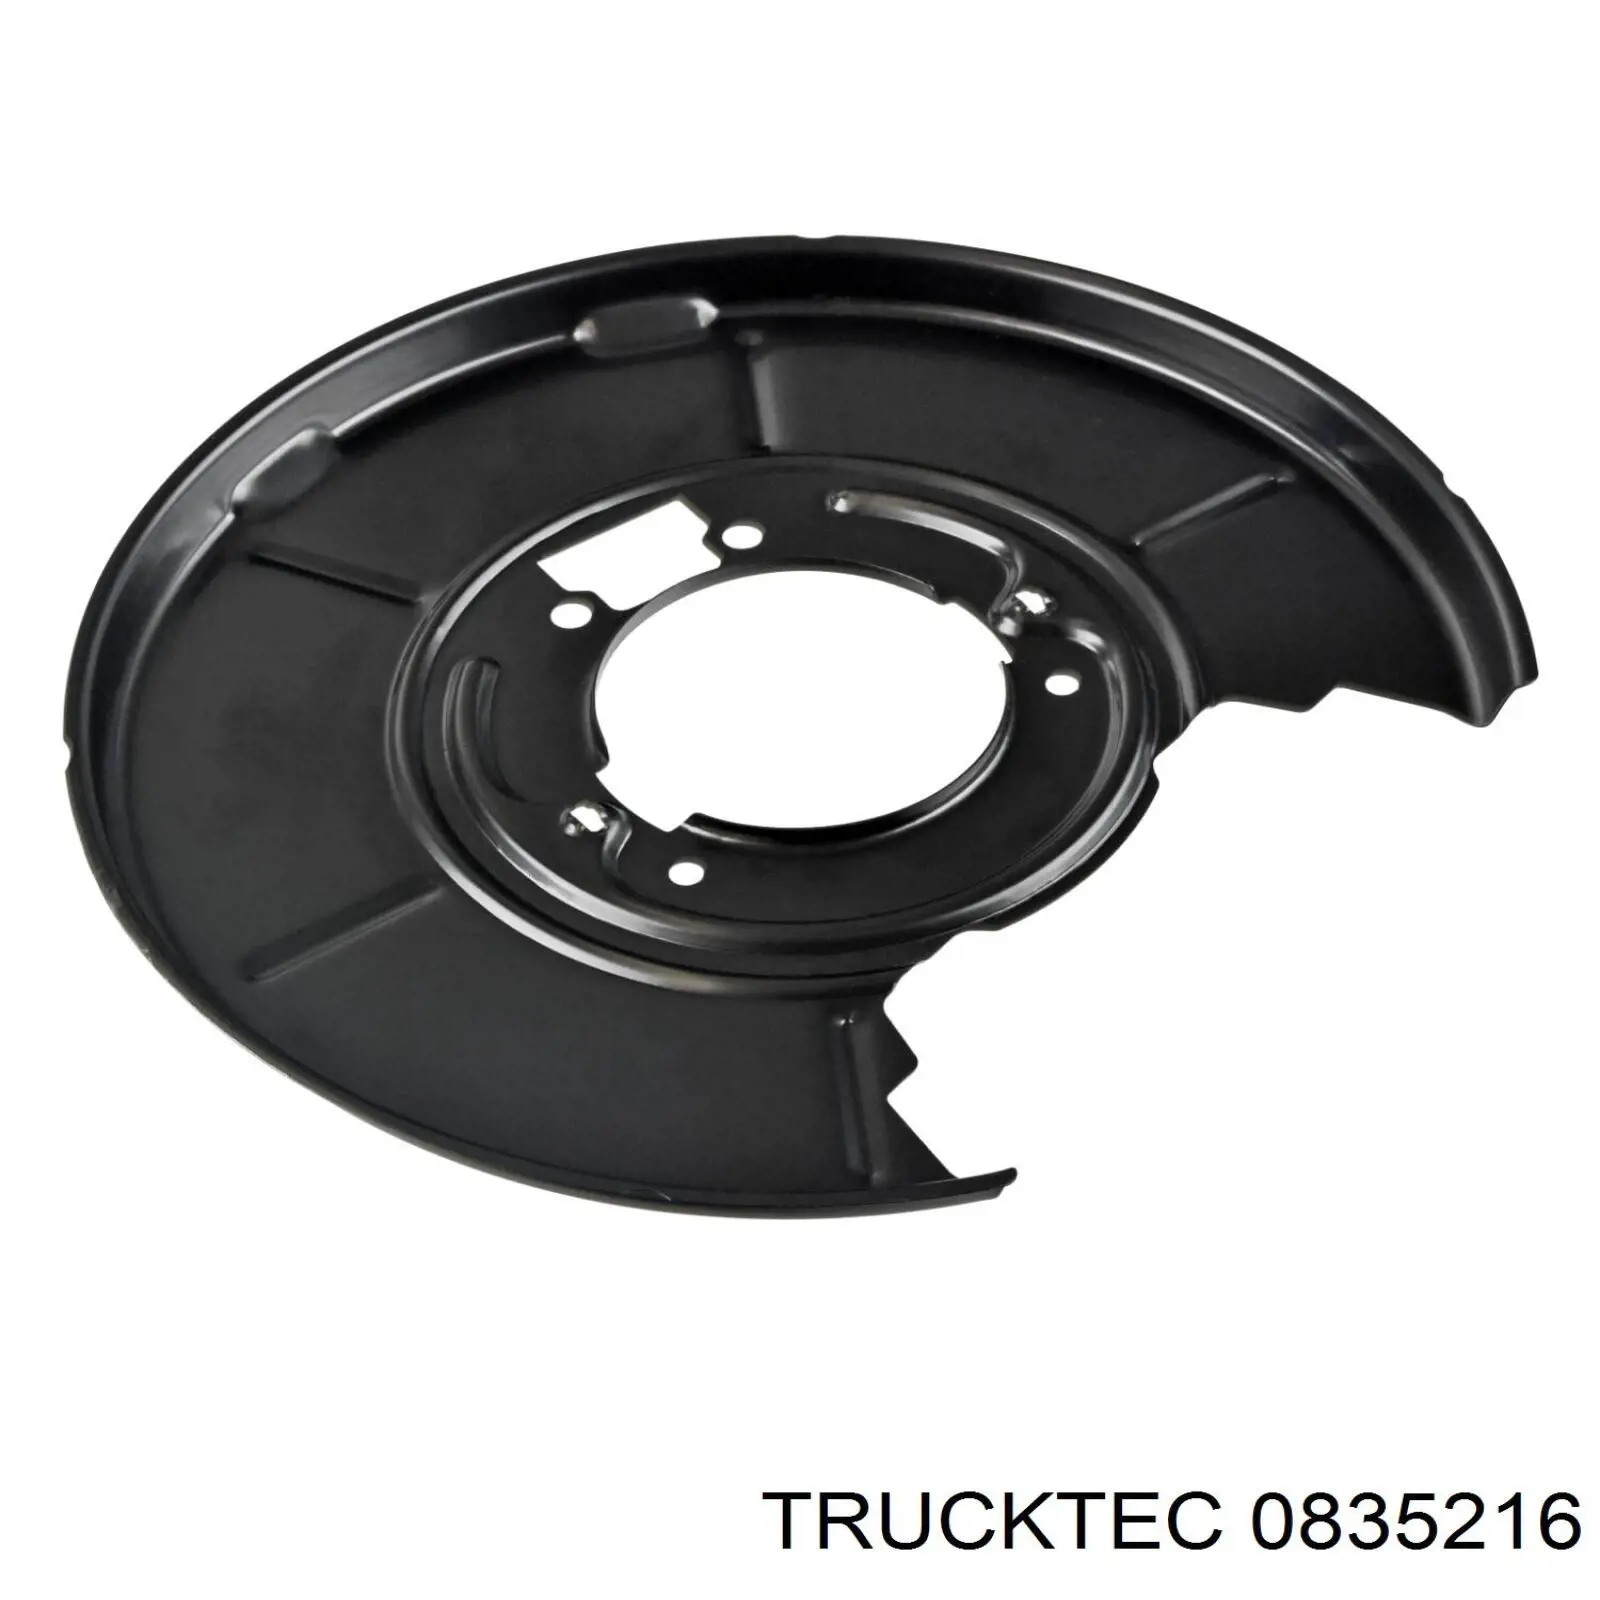 08.35.216 Trucktec chapa protectora contra salpicaduras, disco de freno trasero derecho